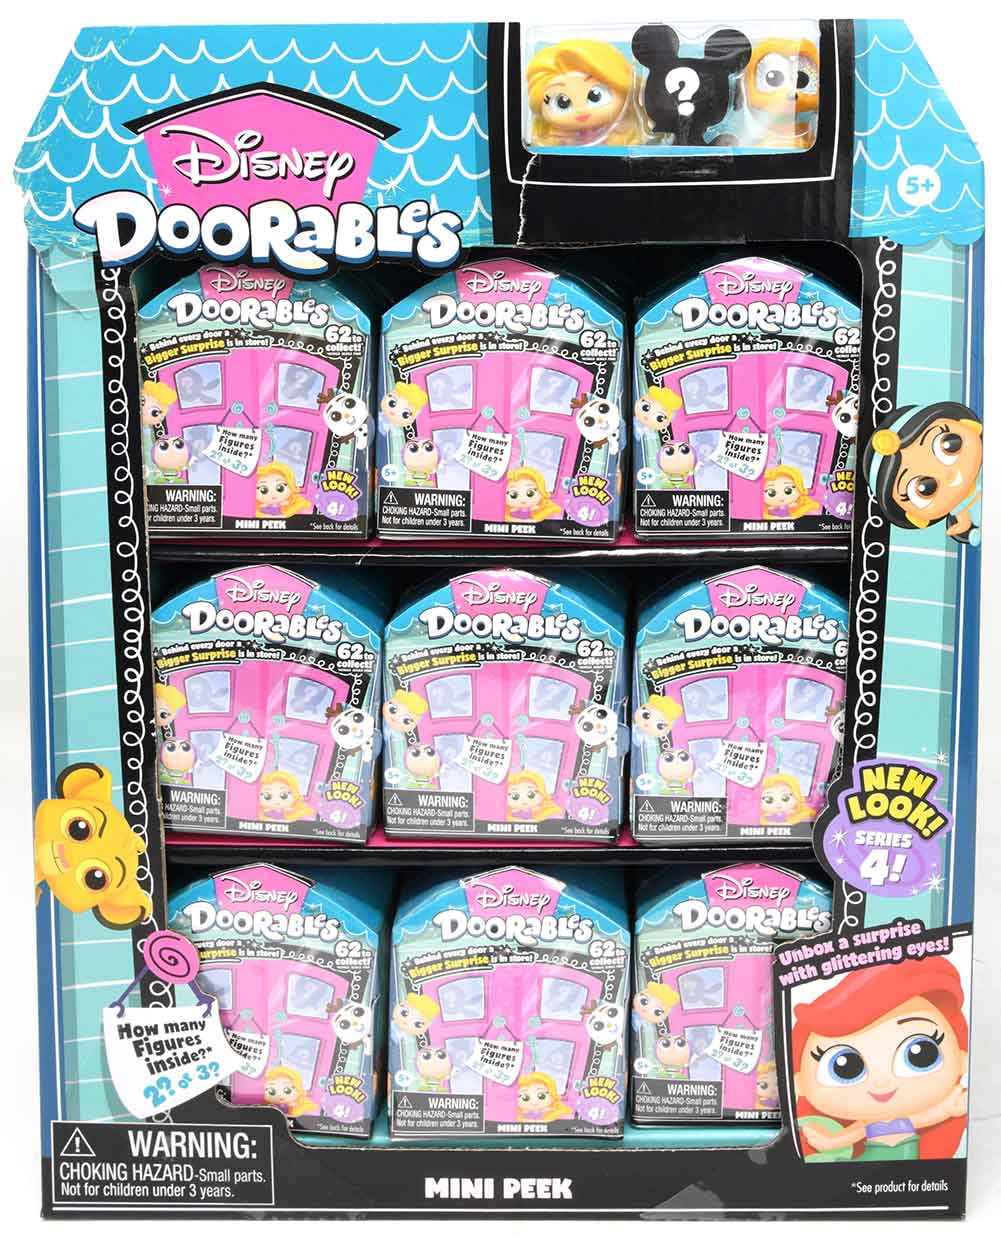 6 New Disney Doorables Series 4 Mini Peek Pack Figures Blind Surprise Lot Of 6!